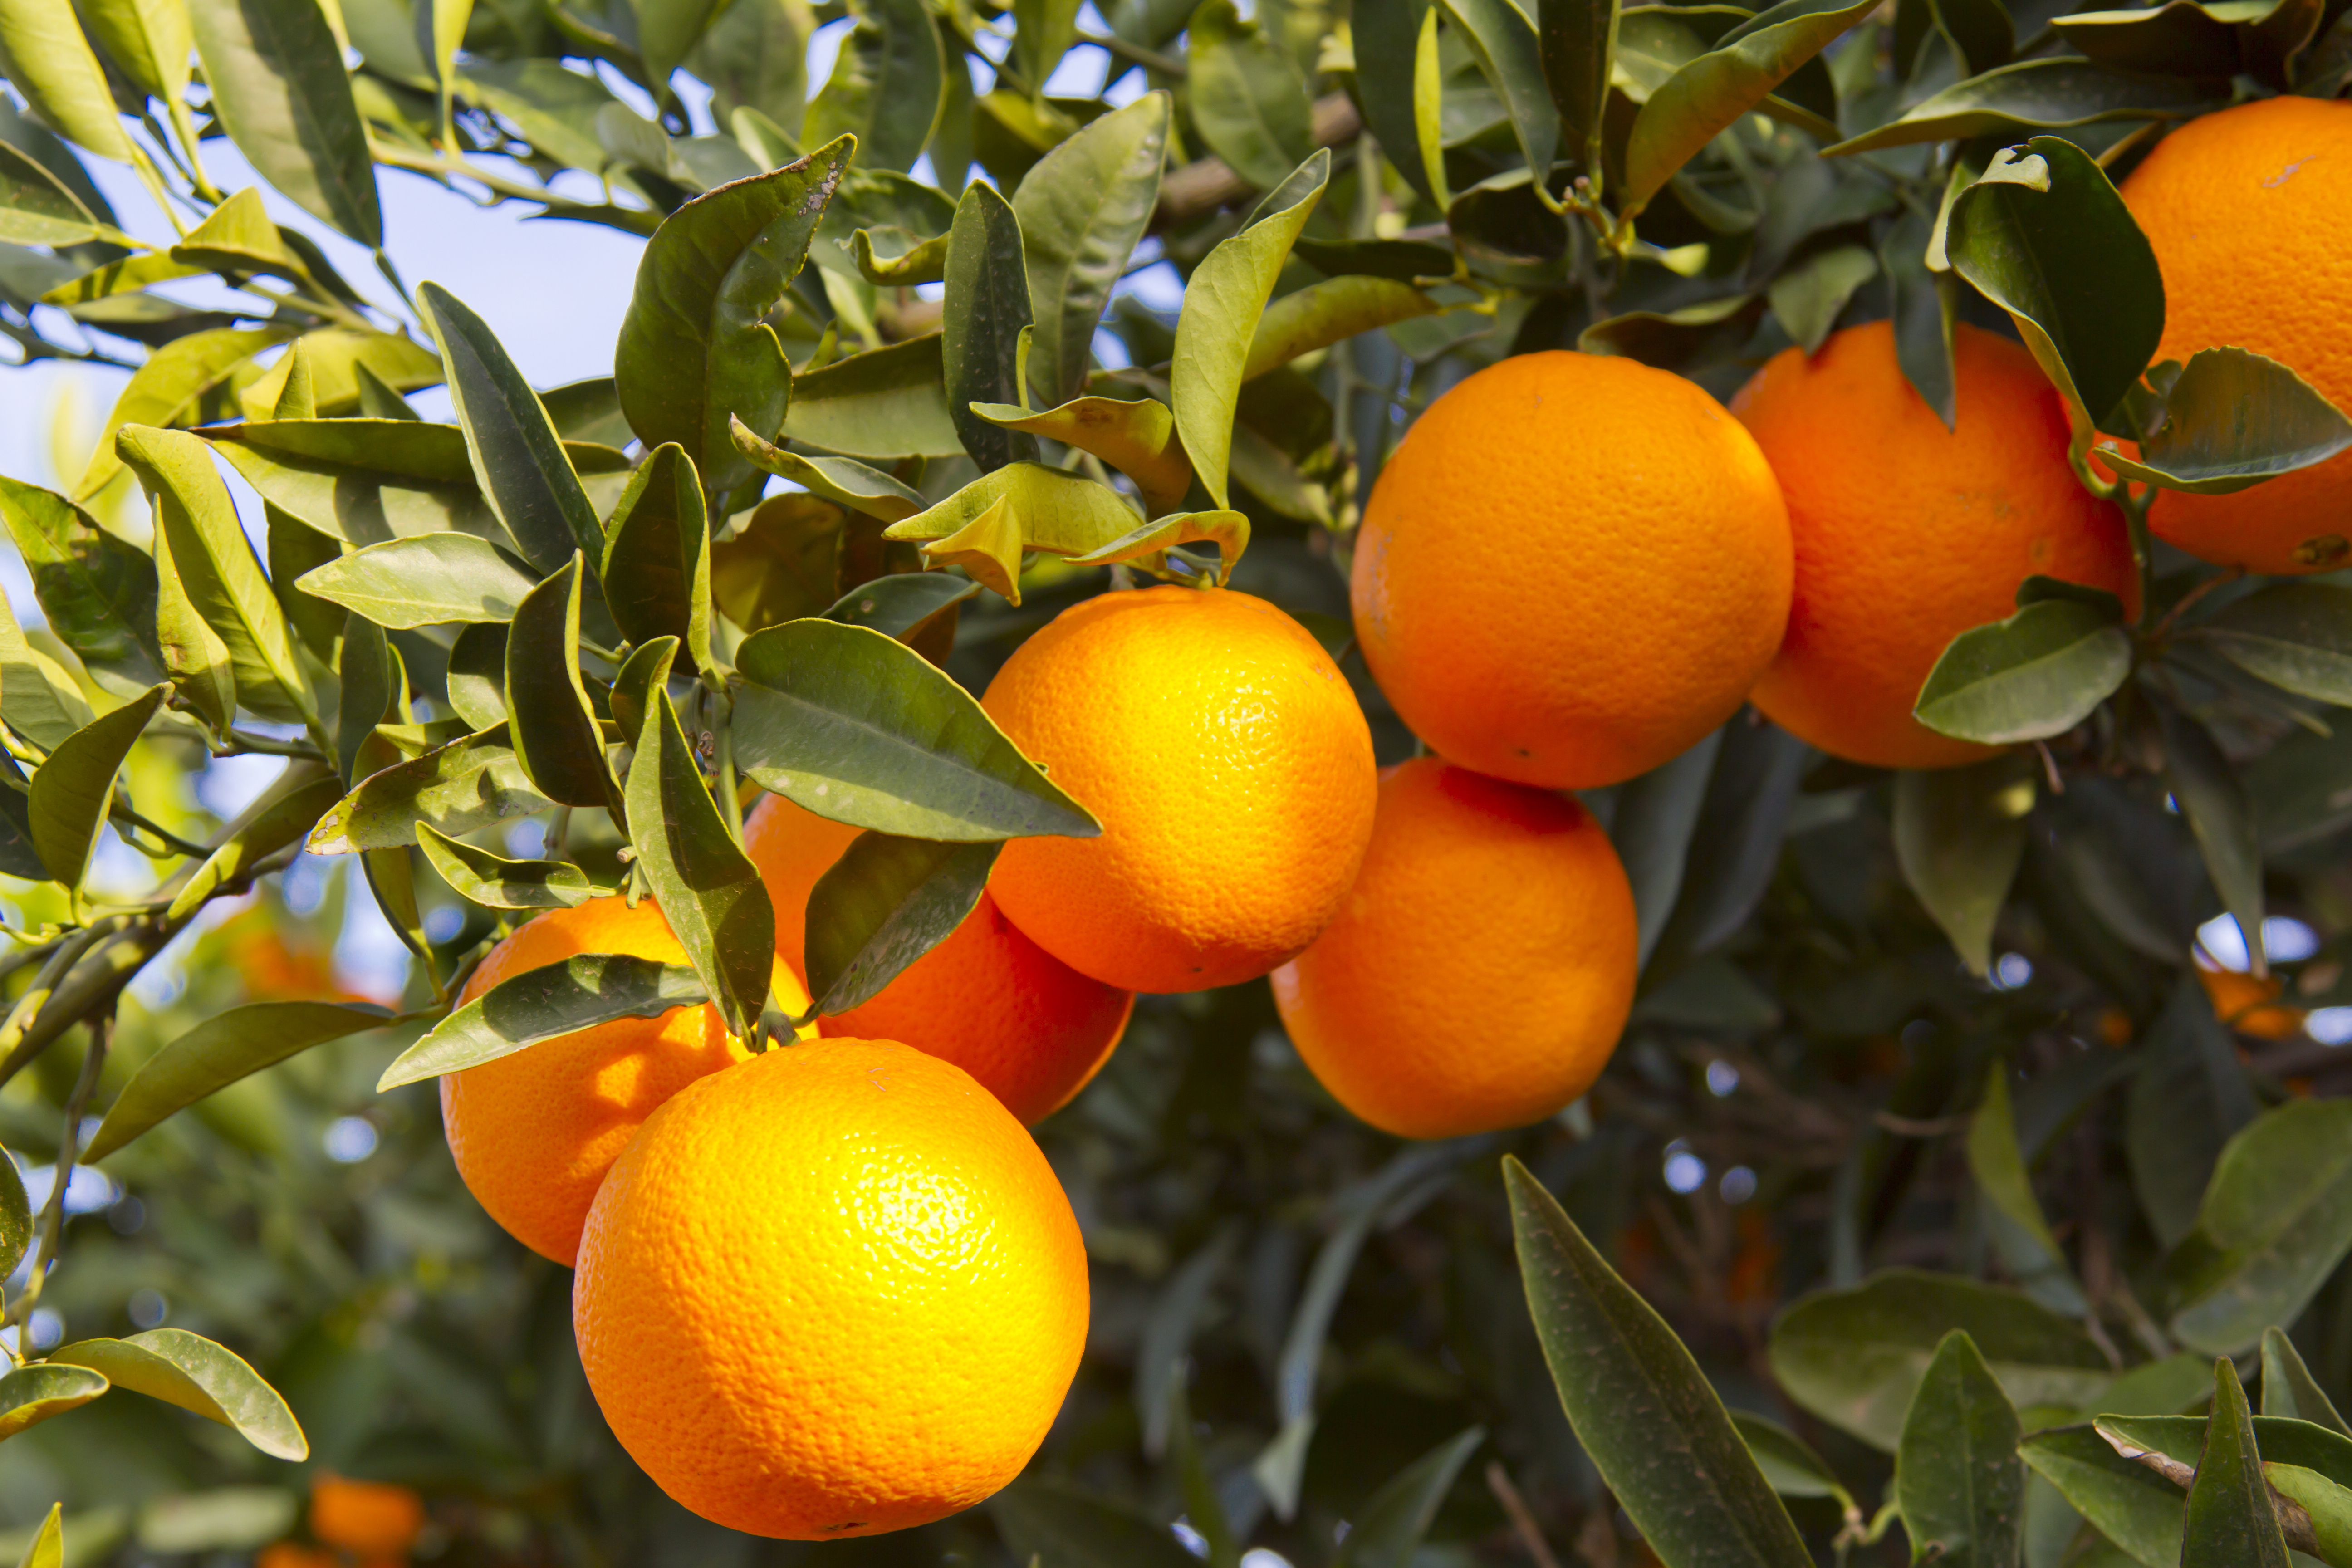 Мандарин белок. Апельсин Мерлин. Цитрус мандарин +апельсин. Апельсиновые деревья Валенсия. Мандарины в Валенсии.